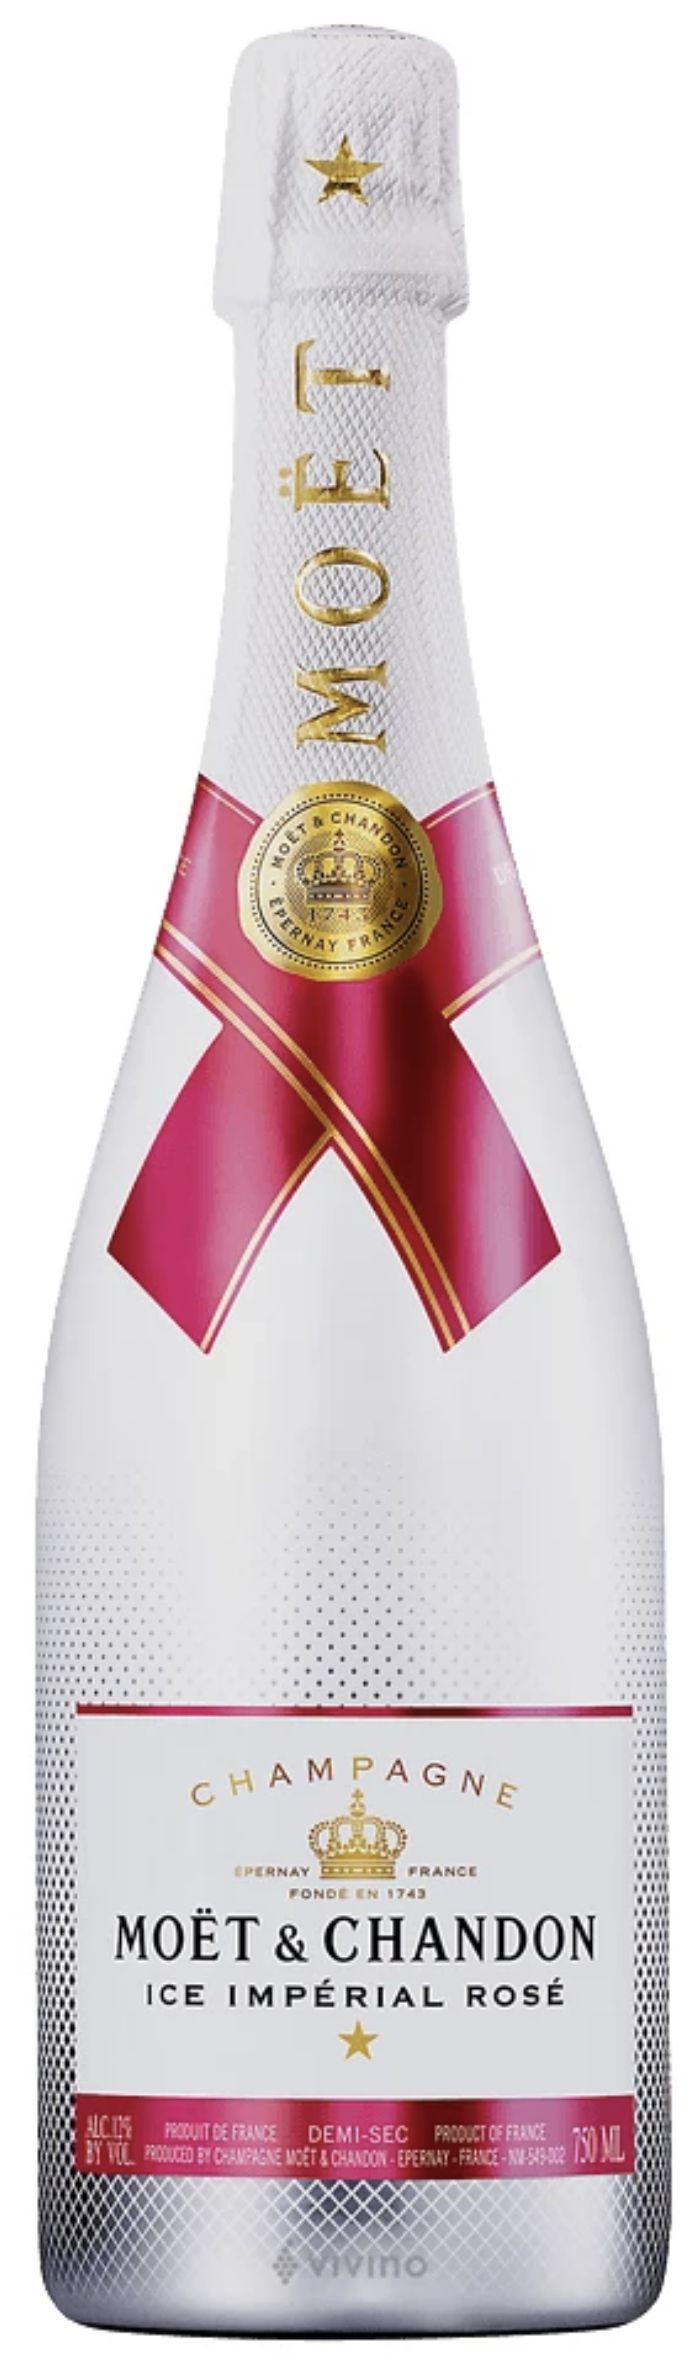 Шампанское Моэт и Шандон Айс Империал Розе, розовое полусухое, 0.75 л